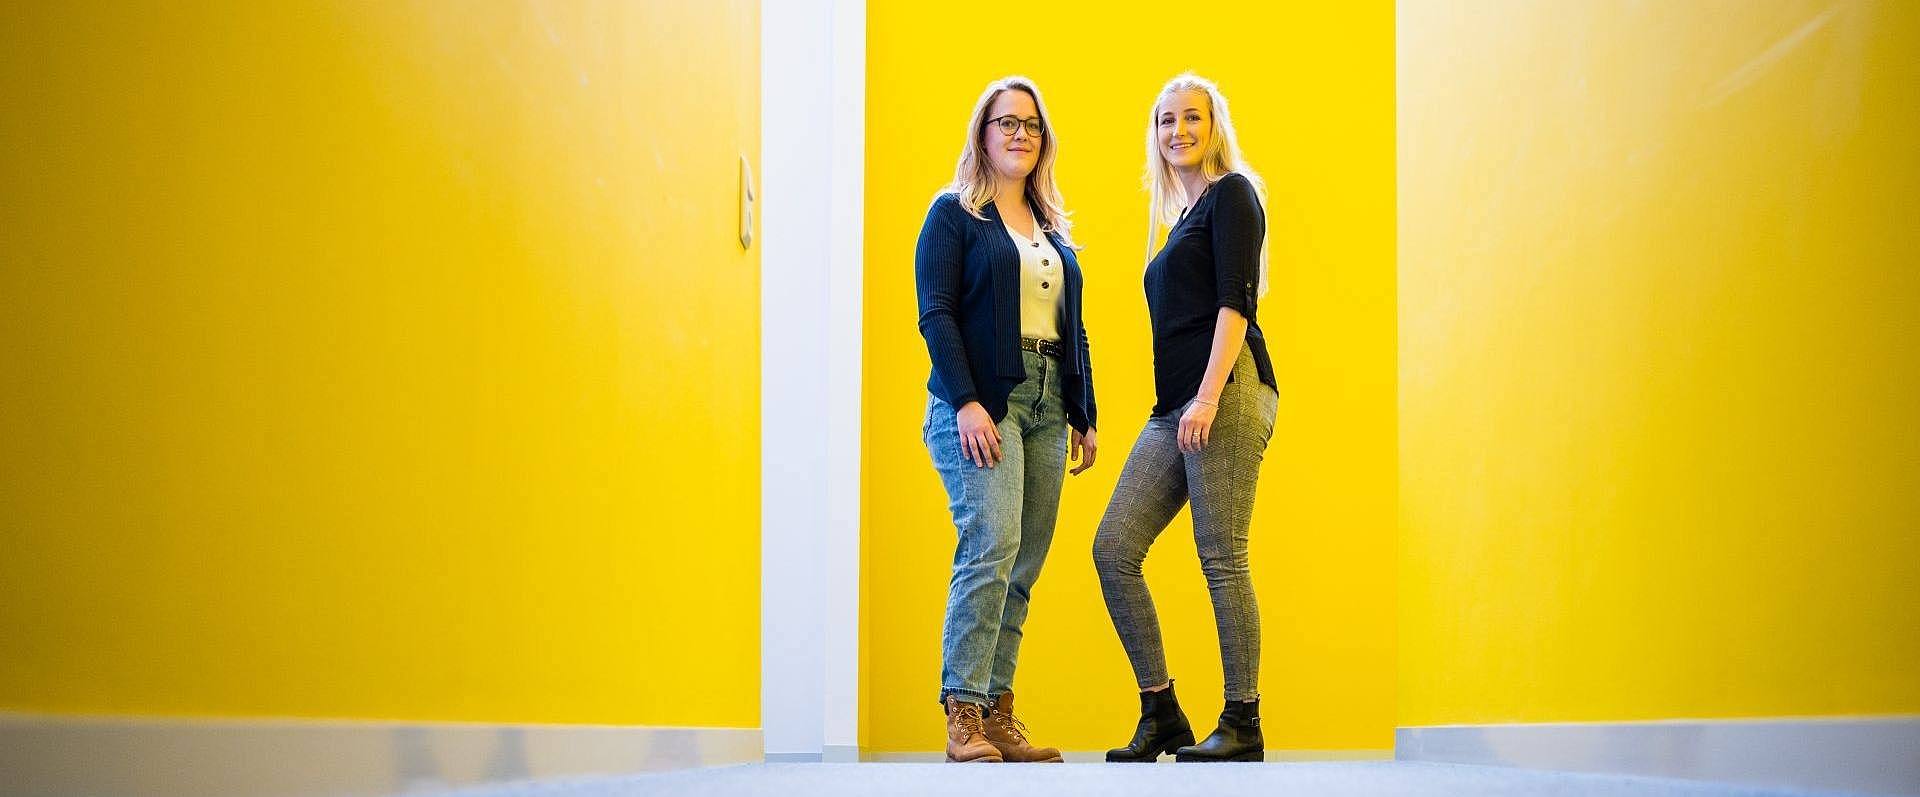 Zwei Studentinnen stehen vor einer gelben Wand